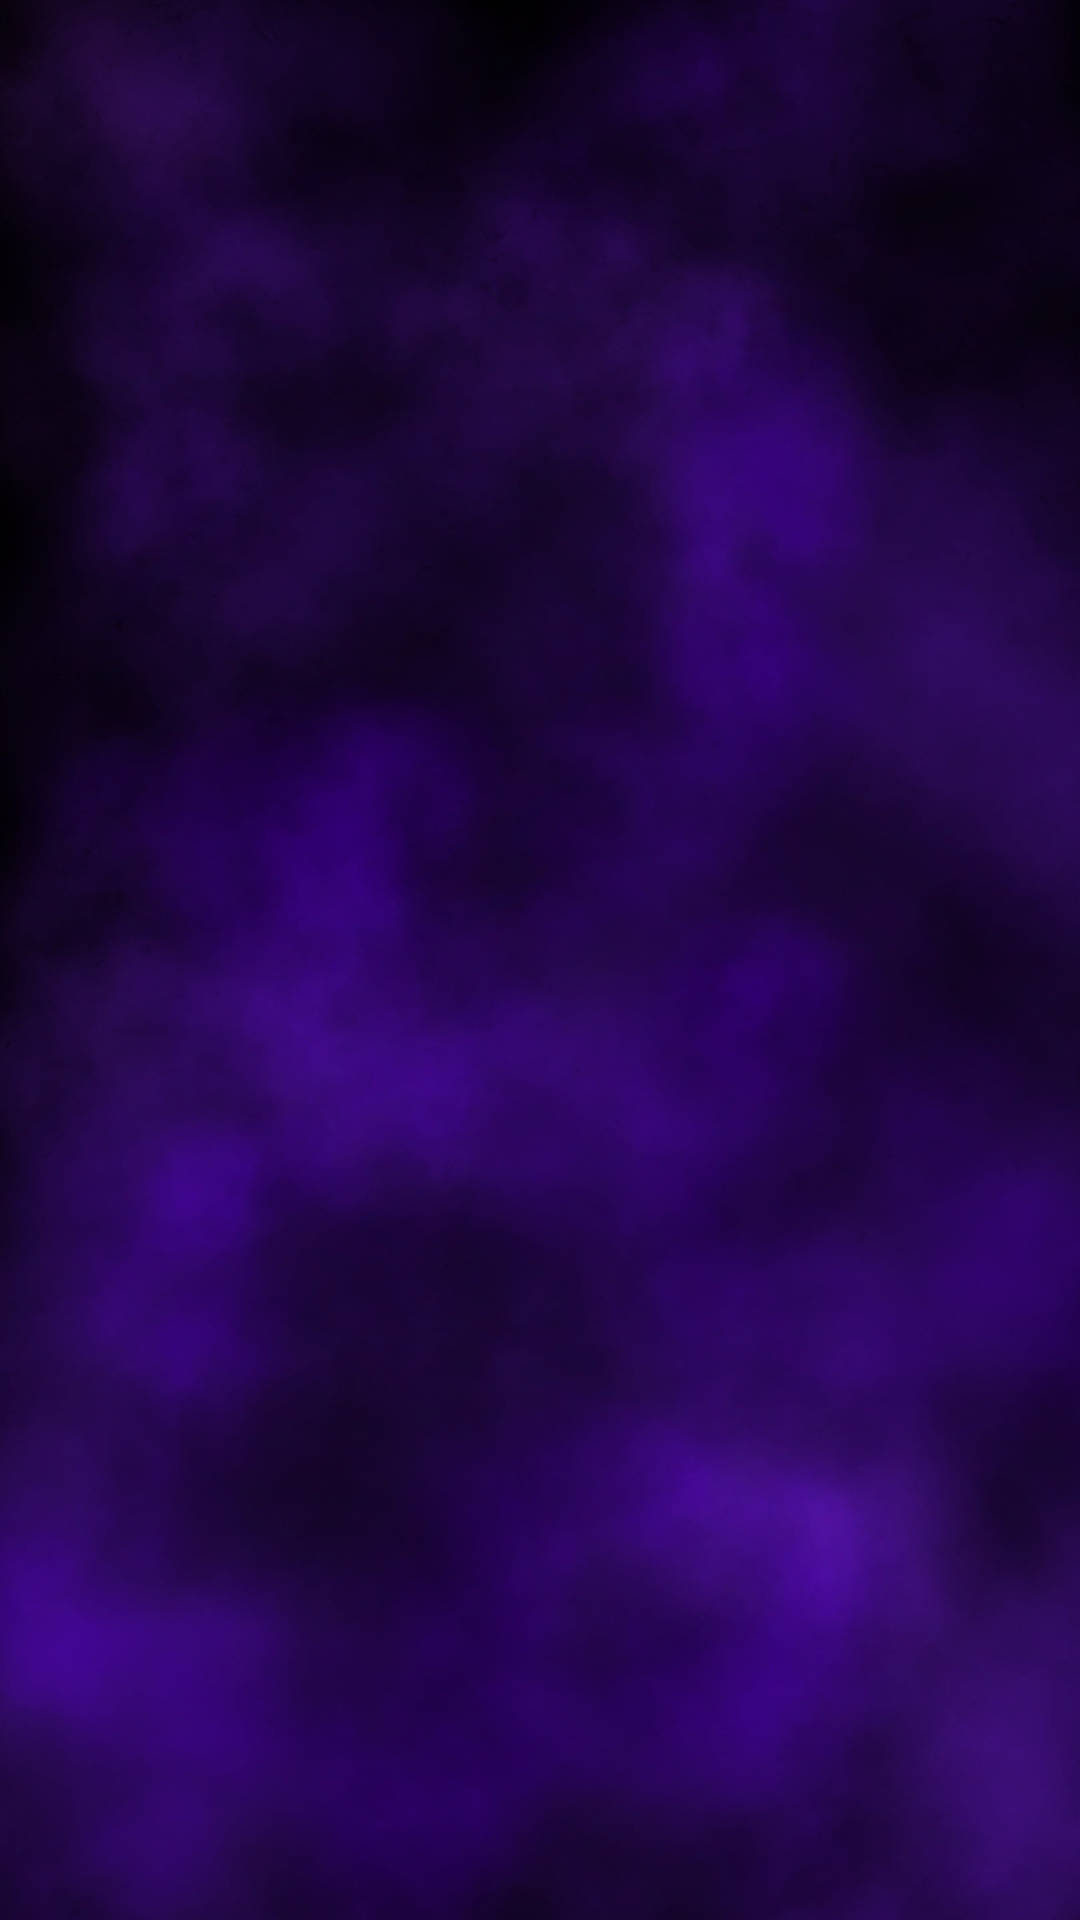 Simple Dark Purple Fog